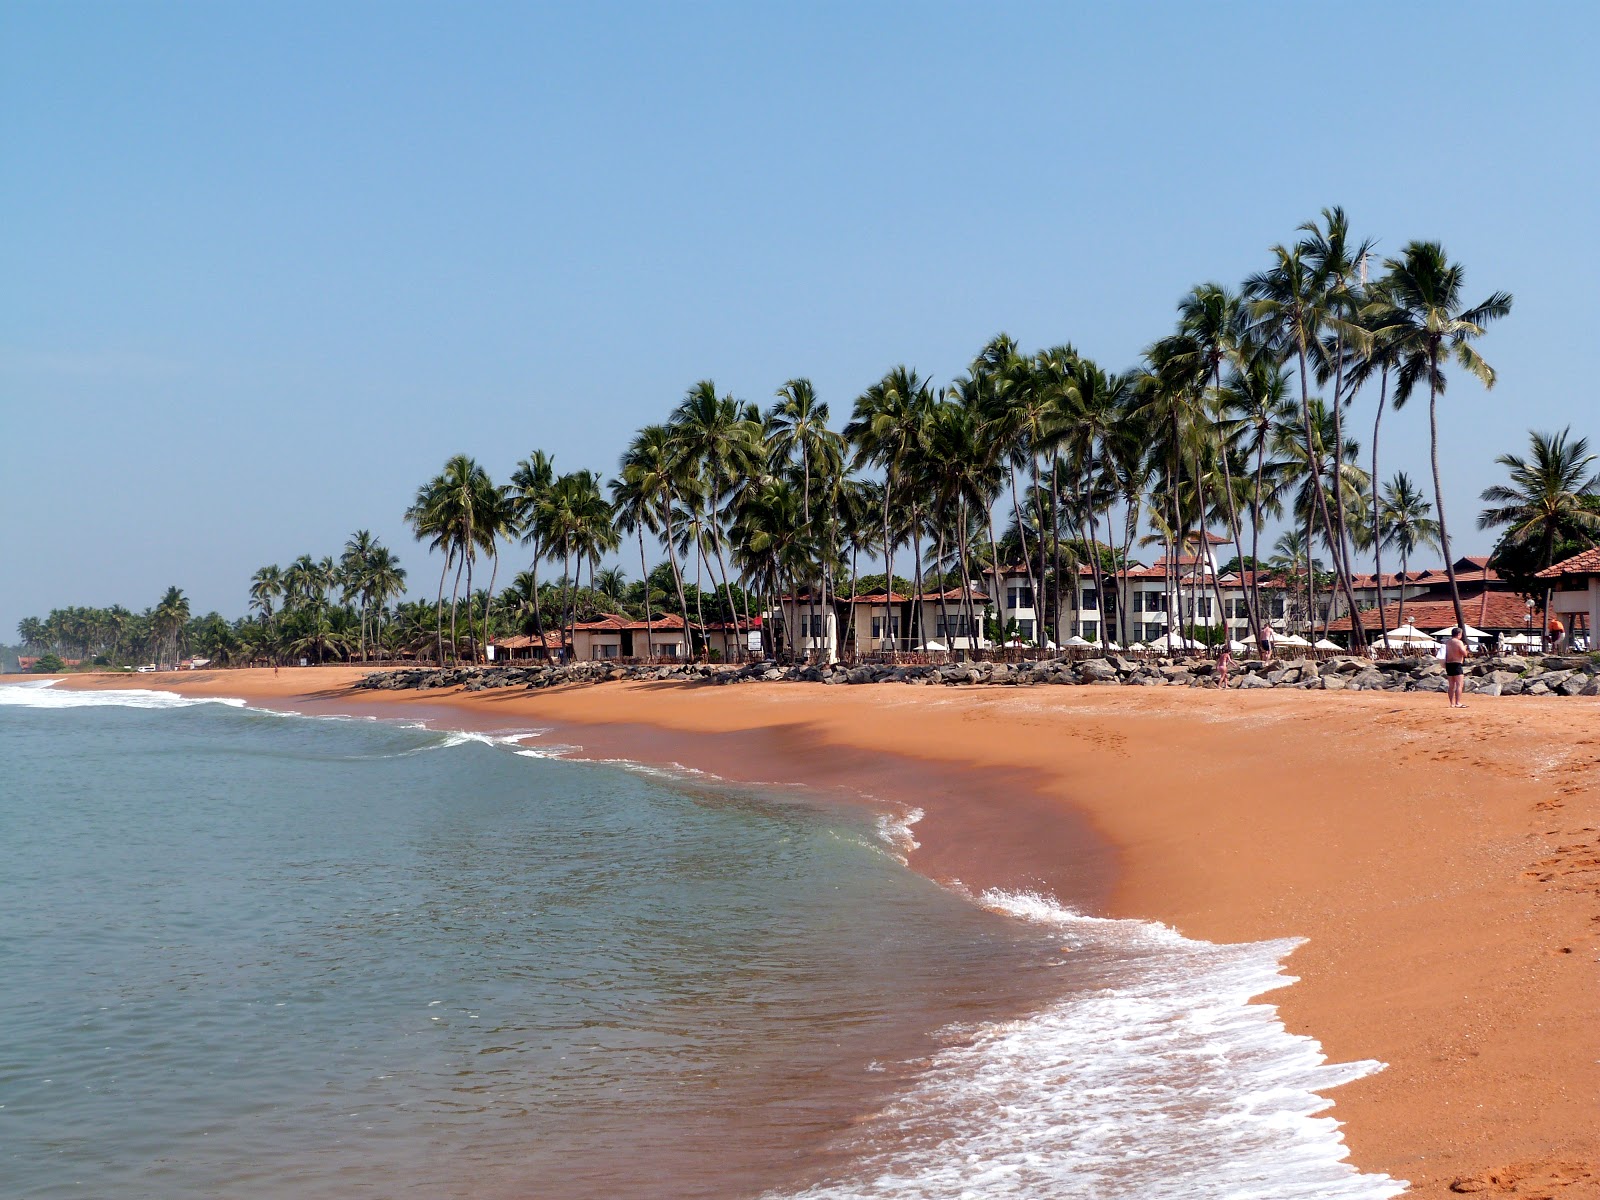 Foto av Dolphin hotel beach med ljus sand yta